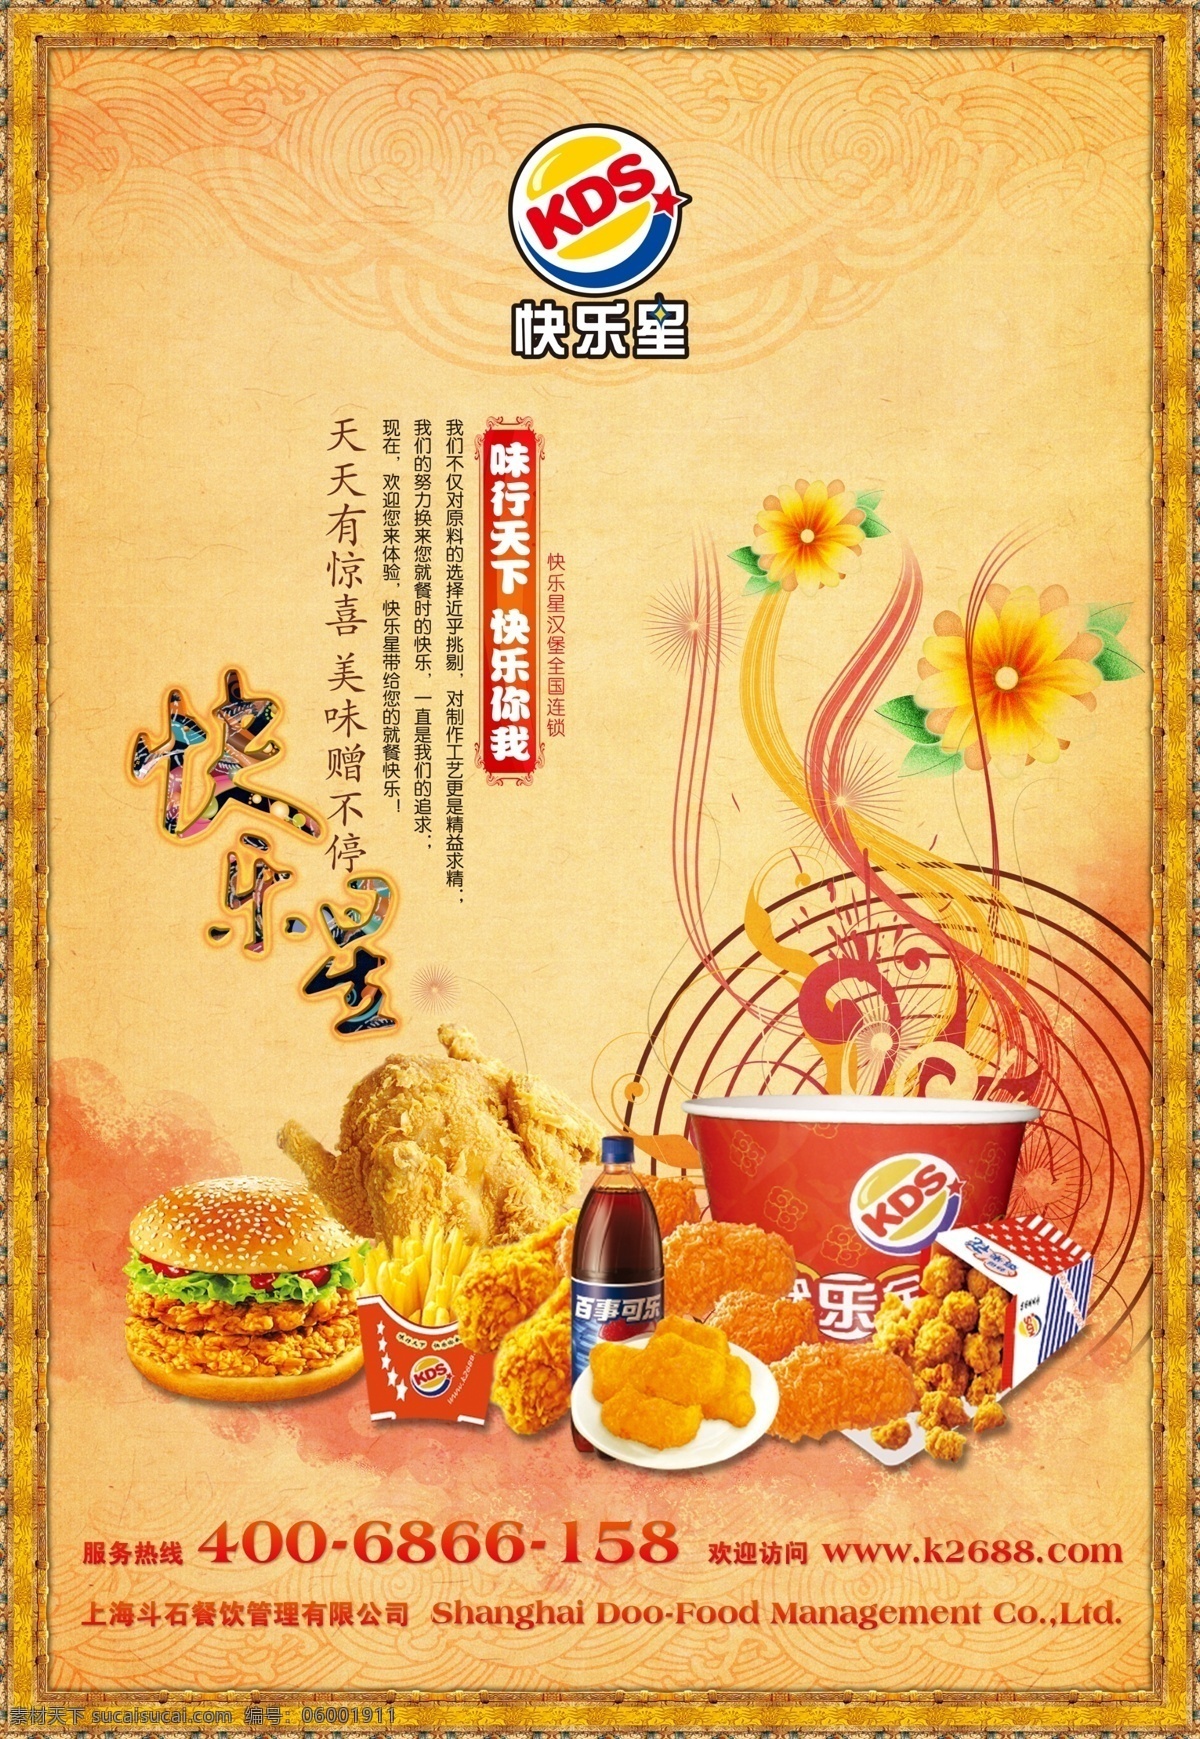 餐饮海报 餐饮 海报 中餐 菜 菜谱 鸡肉 手扒鸡 汉堡 可乐 全家桶 餐饮类海报